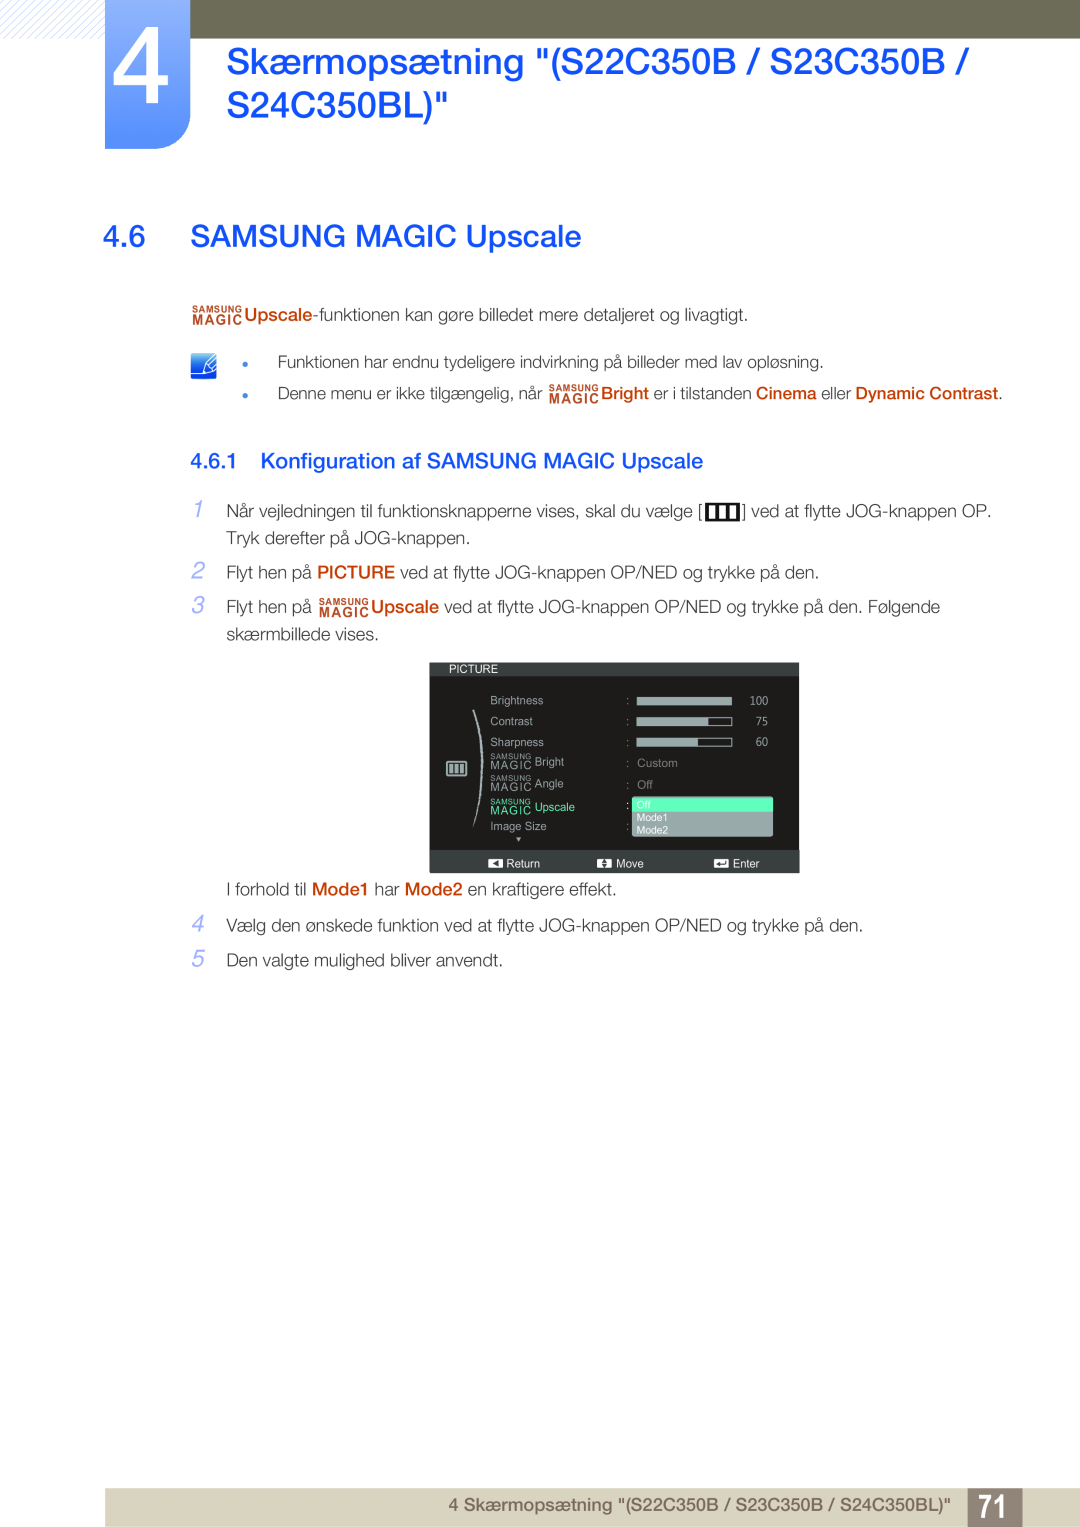 Samsung LS27C350HS/EN manual Konfiguration af SAMSUNG MAGIC Upscale, 4 SkærmopsætningS24C350BL S22C350B / S23C350B 